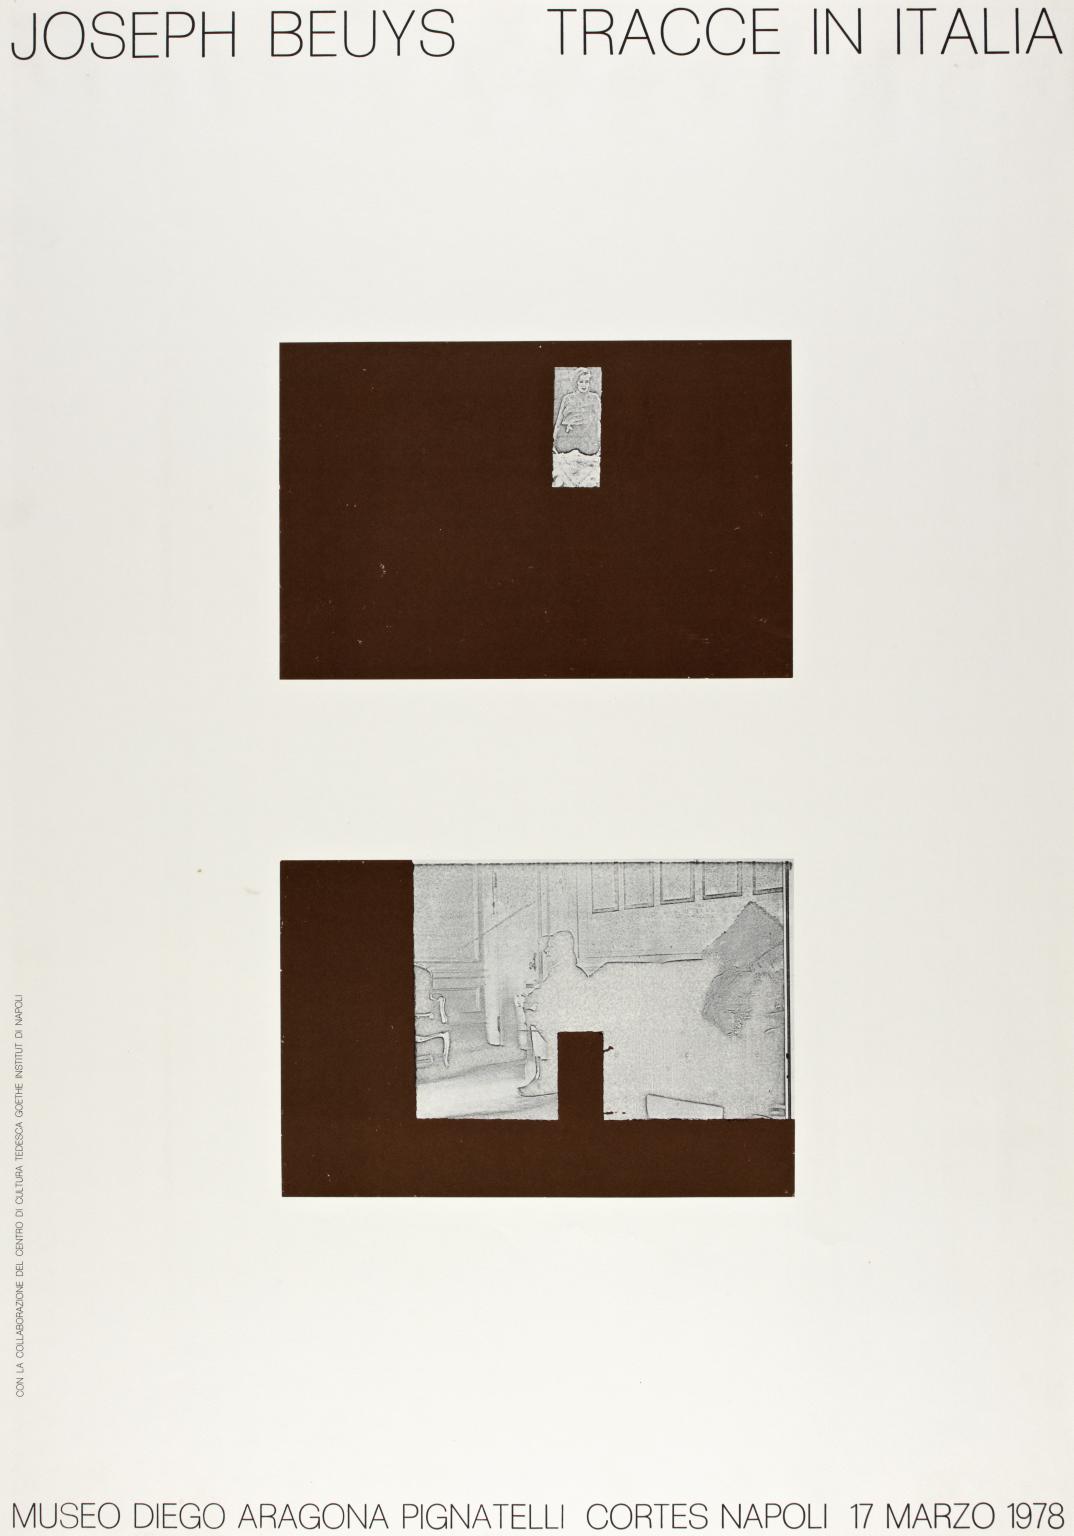 Joseph Beuys: Tracce in Italia. 1978